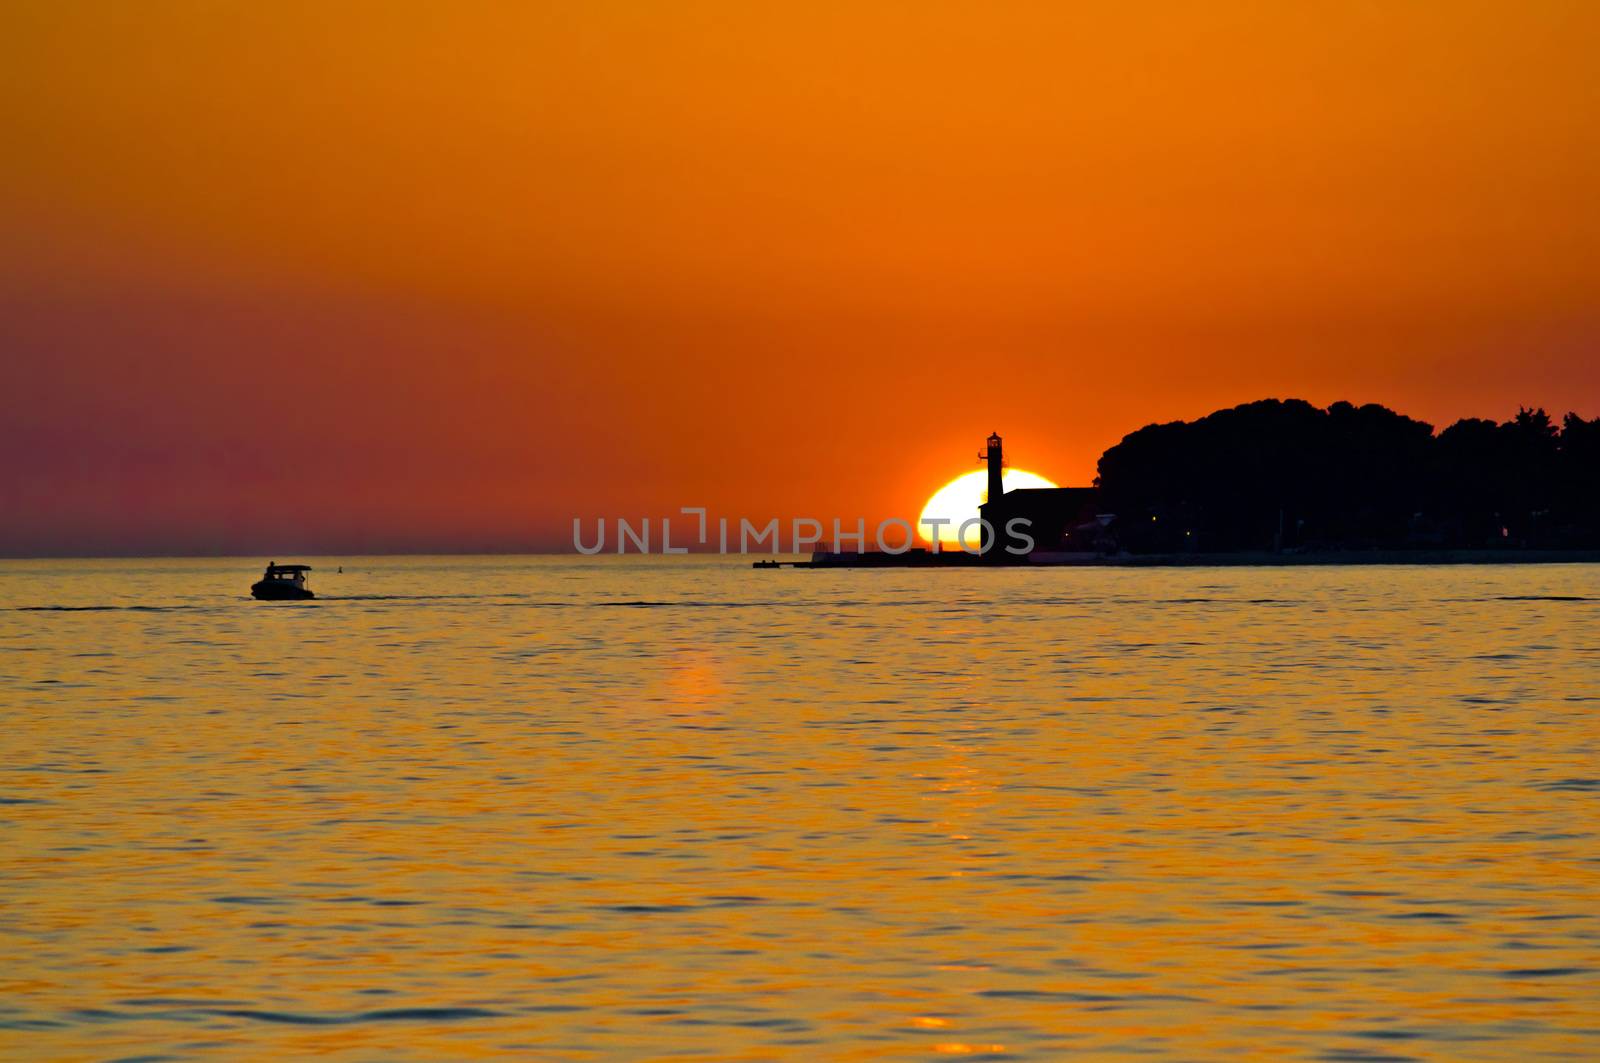 Lighthouse in Zadar and boat on the sea epic sunset, Dalmatia, Croatia